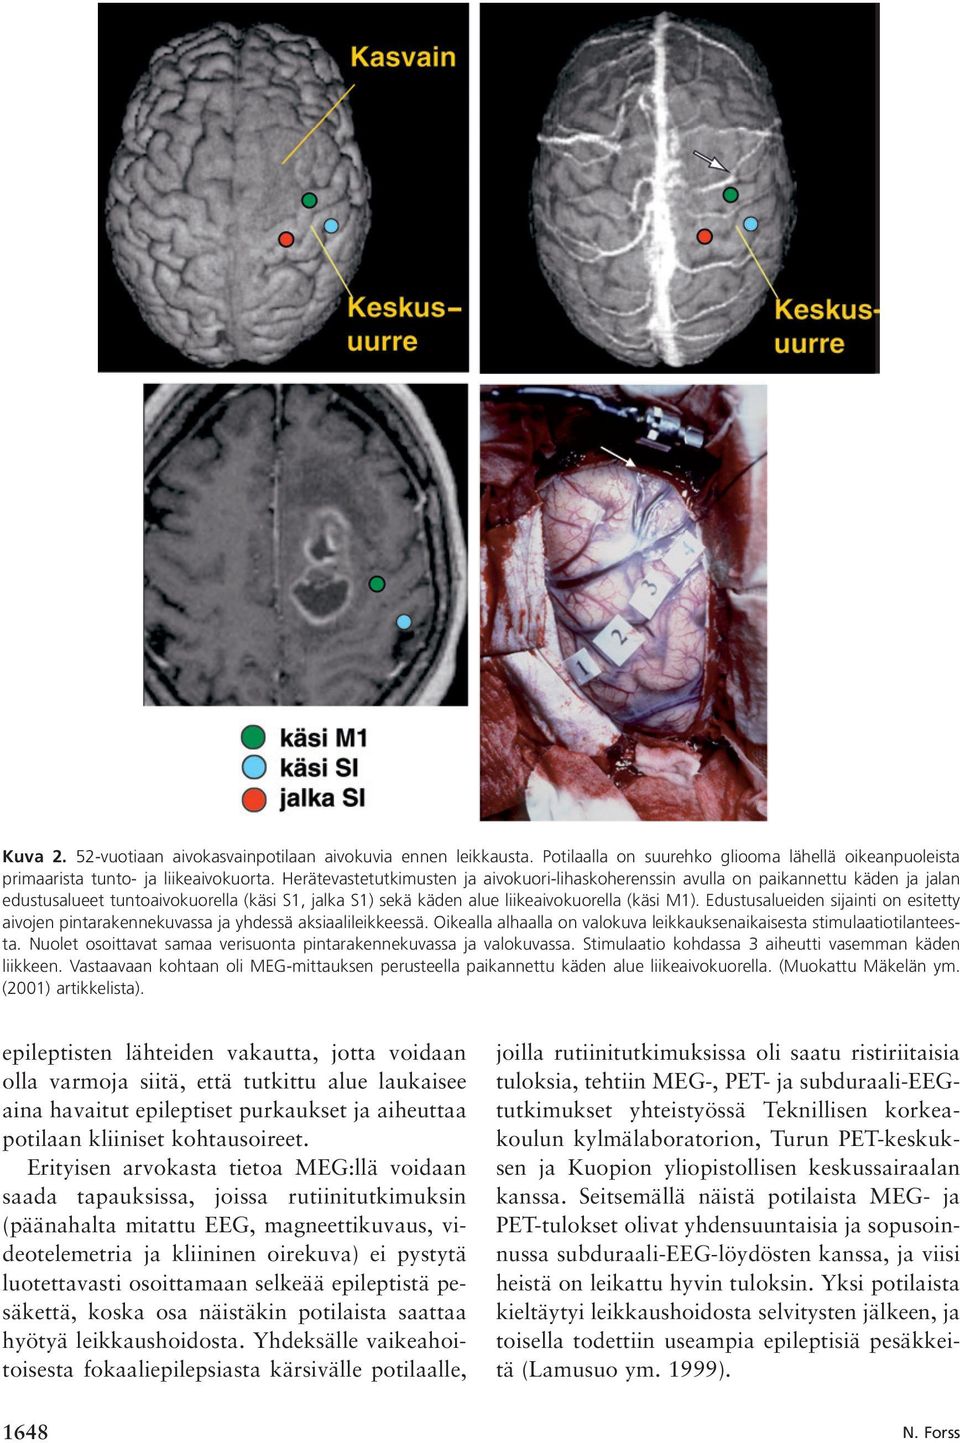 Edustusalueiden sijainti on esitetty aivojen pintarakennekuvassa ja yhdessä aksiaalileikkeessä. Oikealla alhaalla on valokuva leikkauksenaikaisesta stimulaatiotilanteesta.